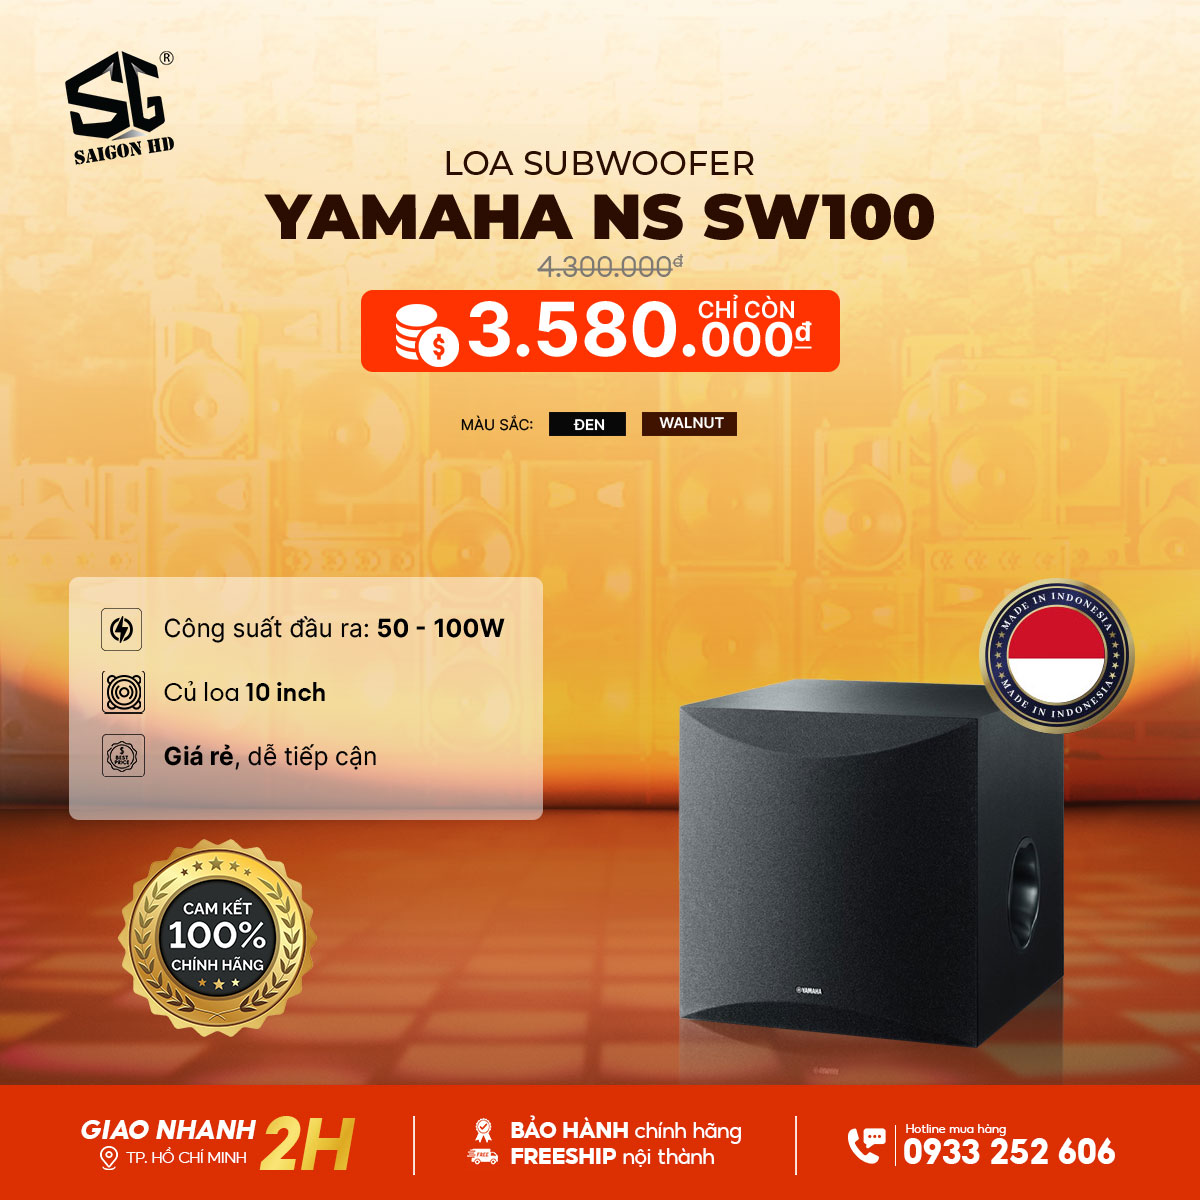 Loa Subwoofer Yamaha NS SW100